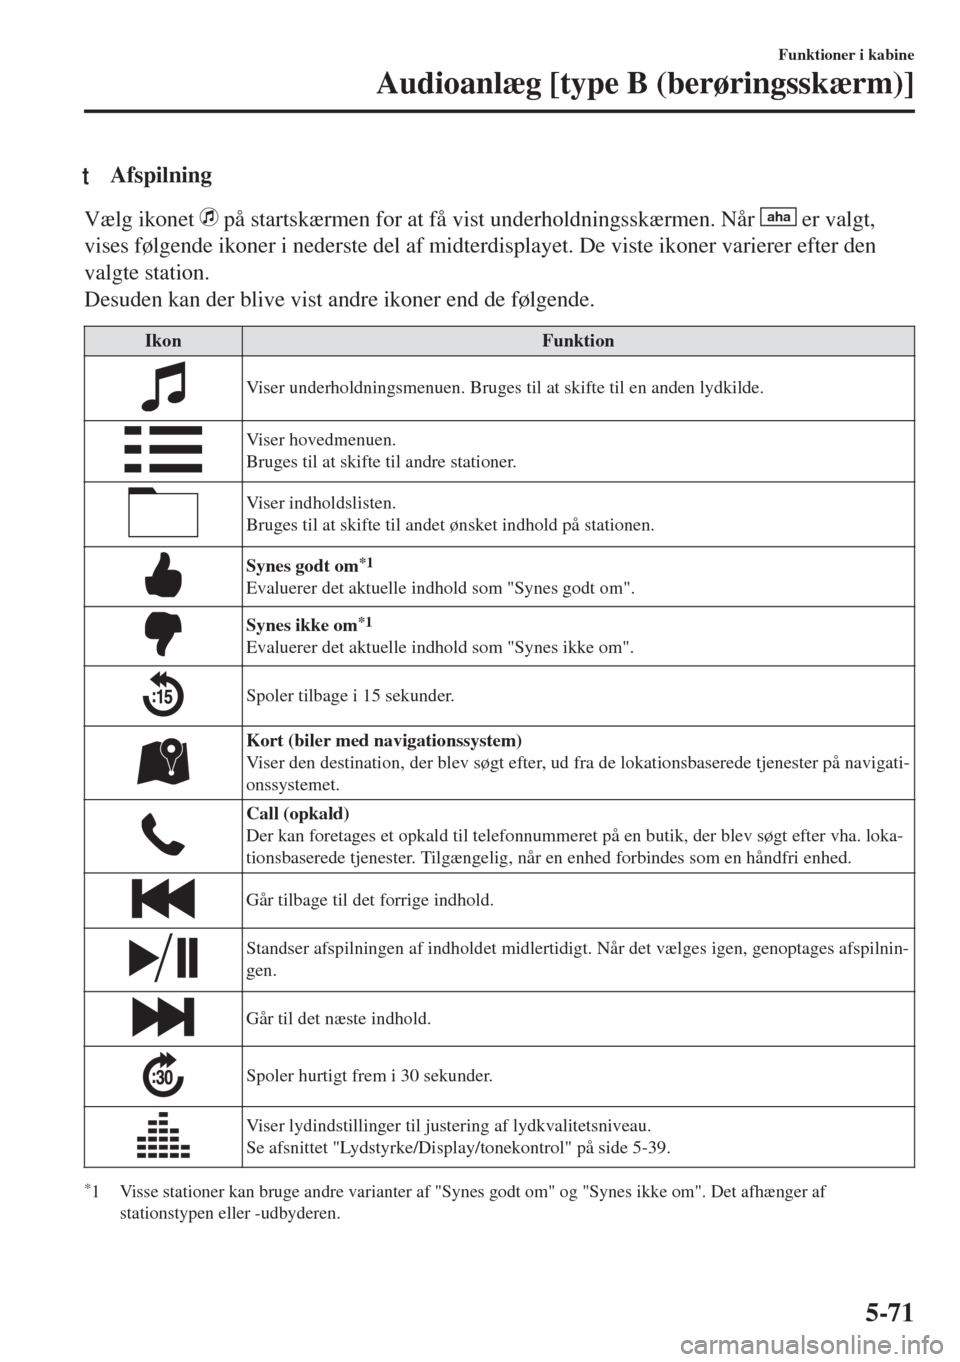 MAZDA MODEL MX-5 2018  Instruktionsbog (in Danish) tAfspilning
Vælg ikonet  på startskærmen for at få vist underholdningsskærmen. Når aha er valgt,
vises følgende ikoner i nederste del af midterdisplayet. De viste ikoner varierer efter den
valg